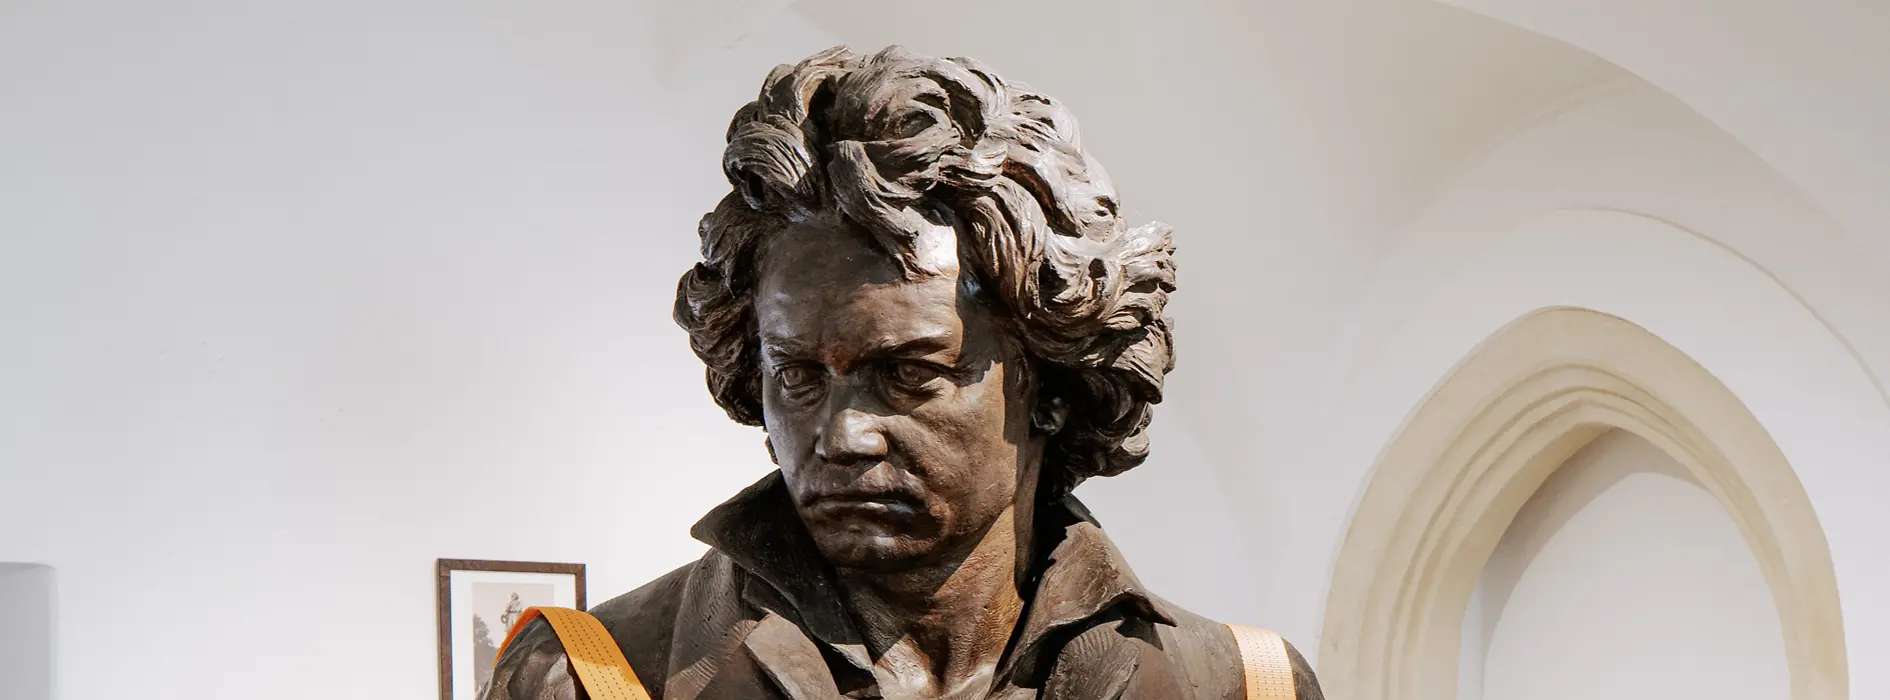 Museo de Beethoven, vista interior, busto de Beethoven en paletas